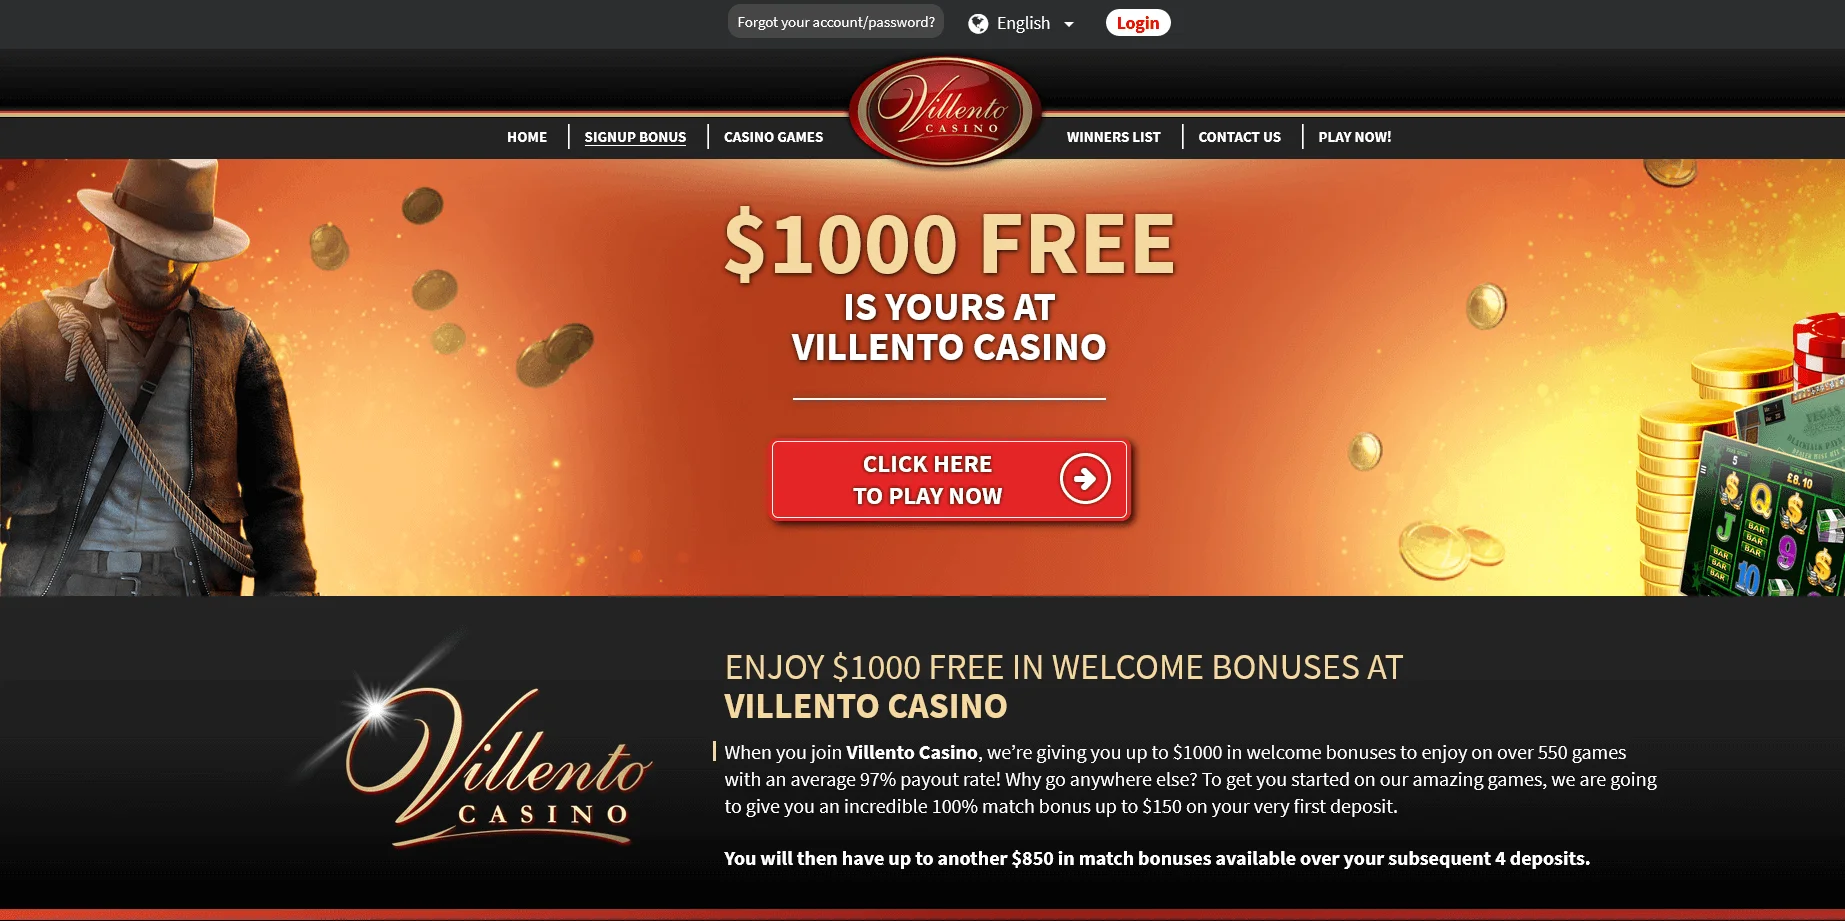 Platební metody na Golden Villento Casino